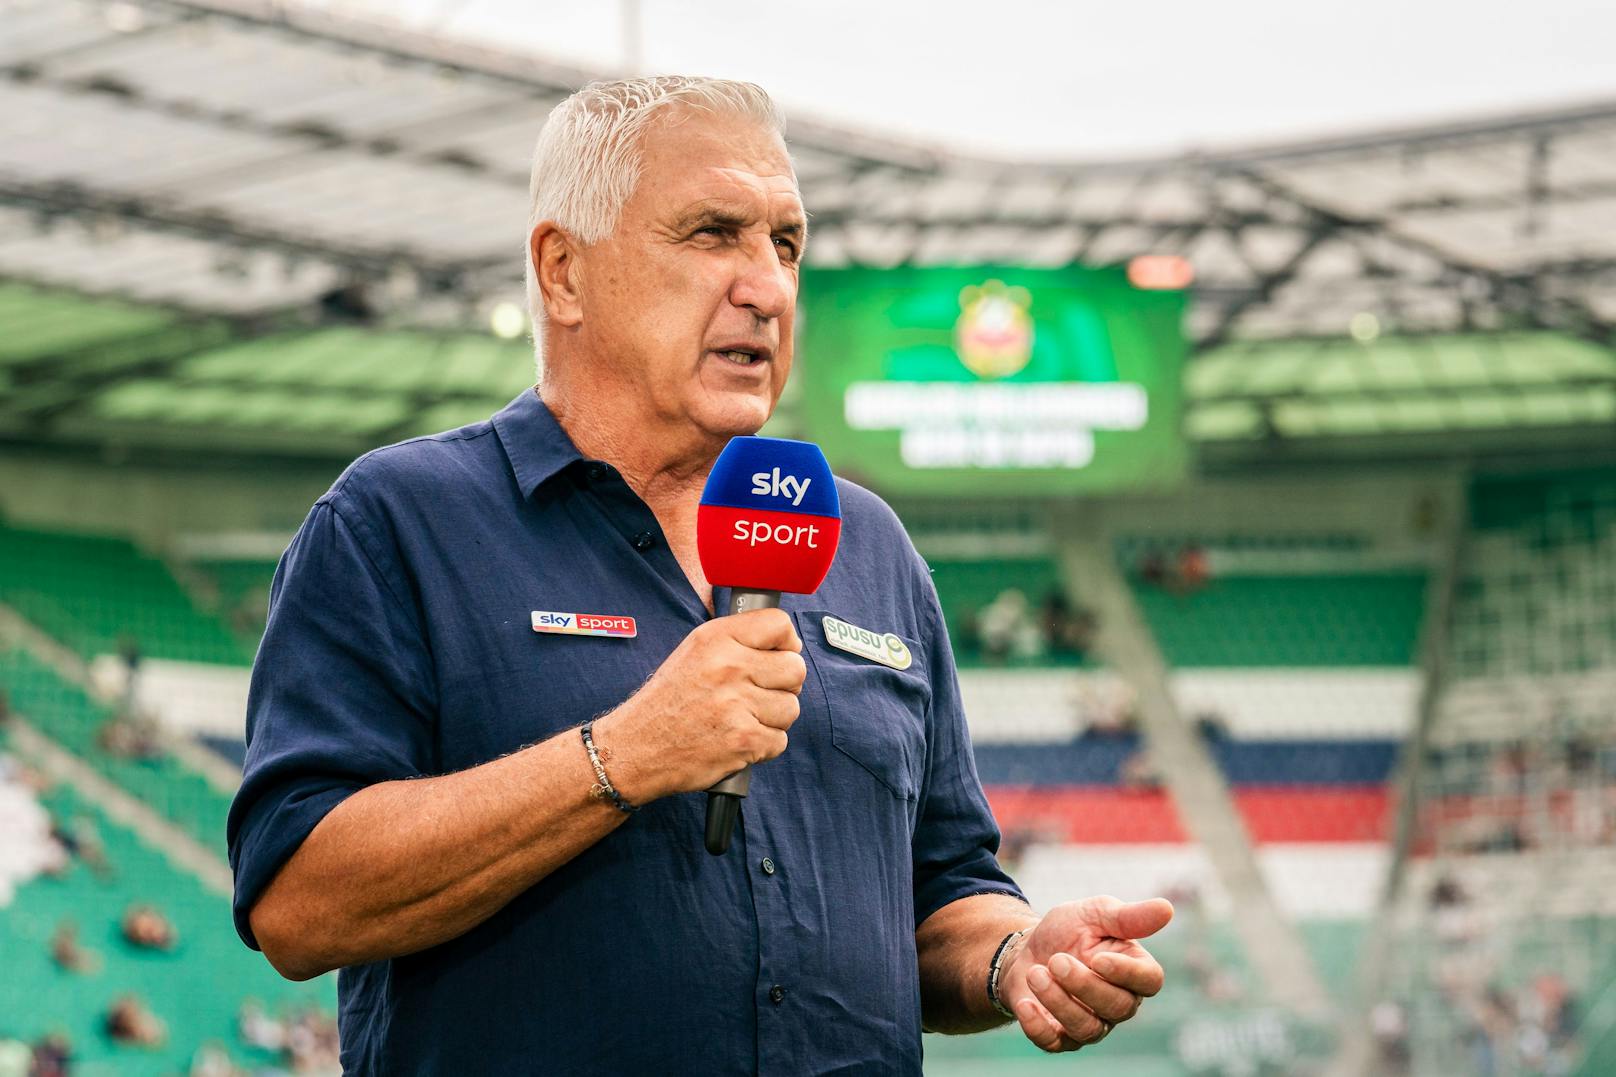 Heute steht Krankl als TV-Experte für "Sky" vor der Kamera und analysiert die Spiele in der heimischen Bundesliga.